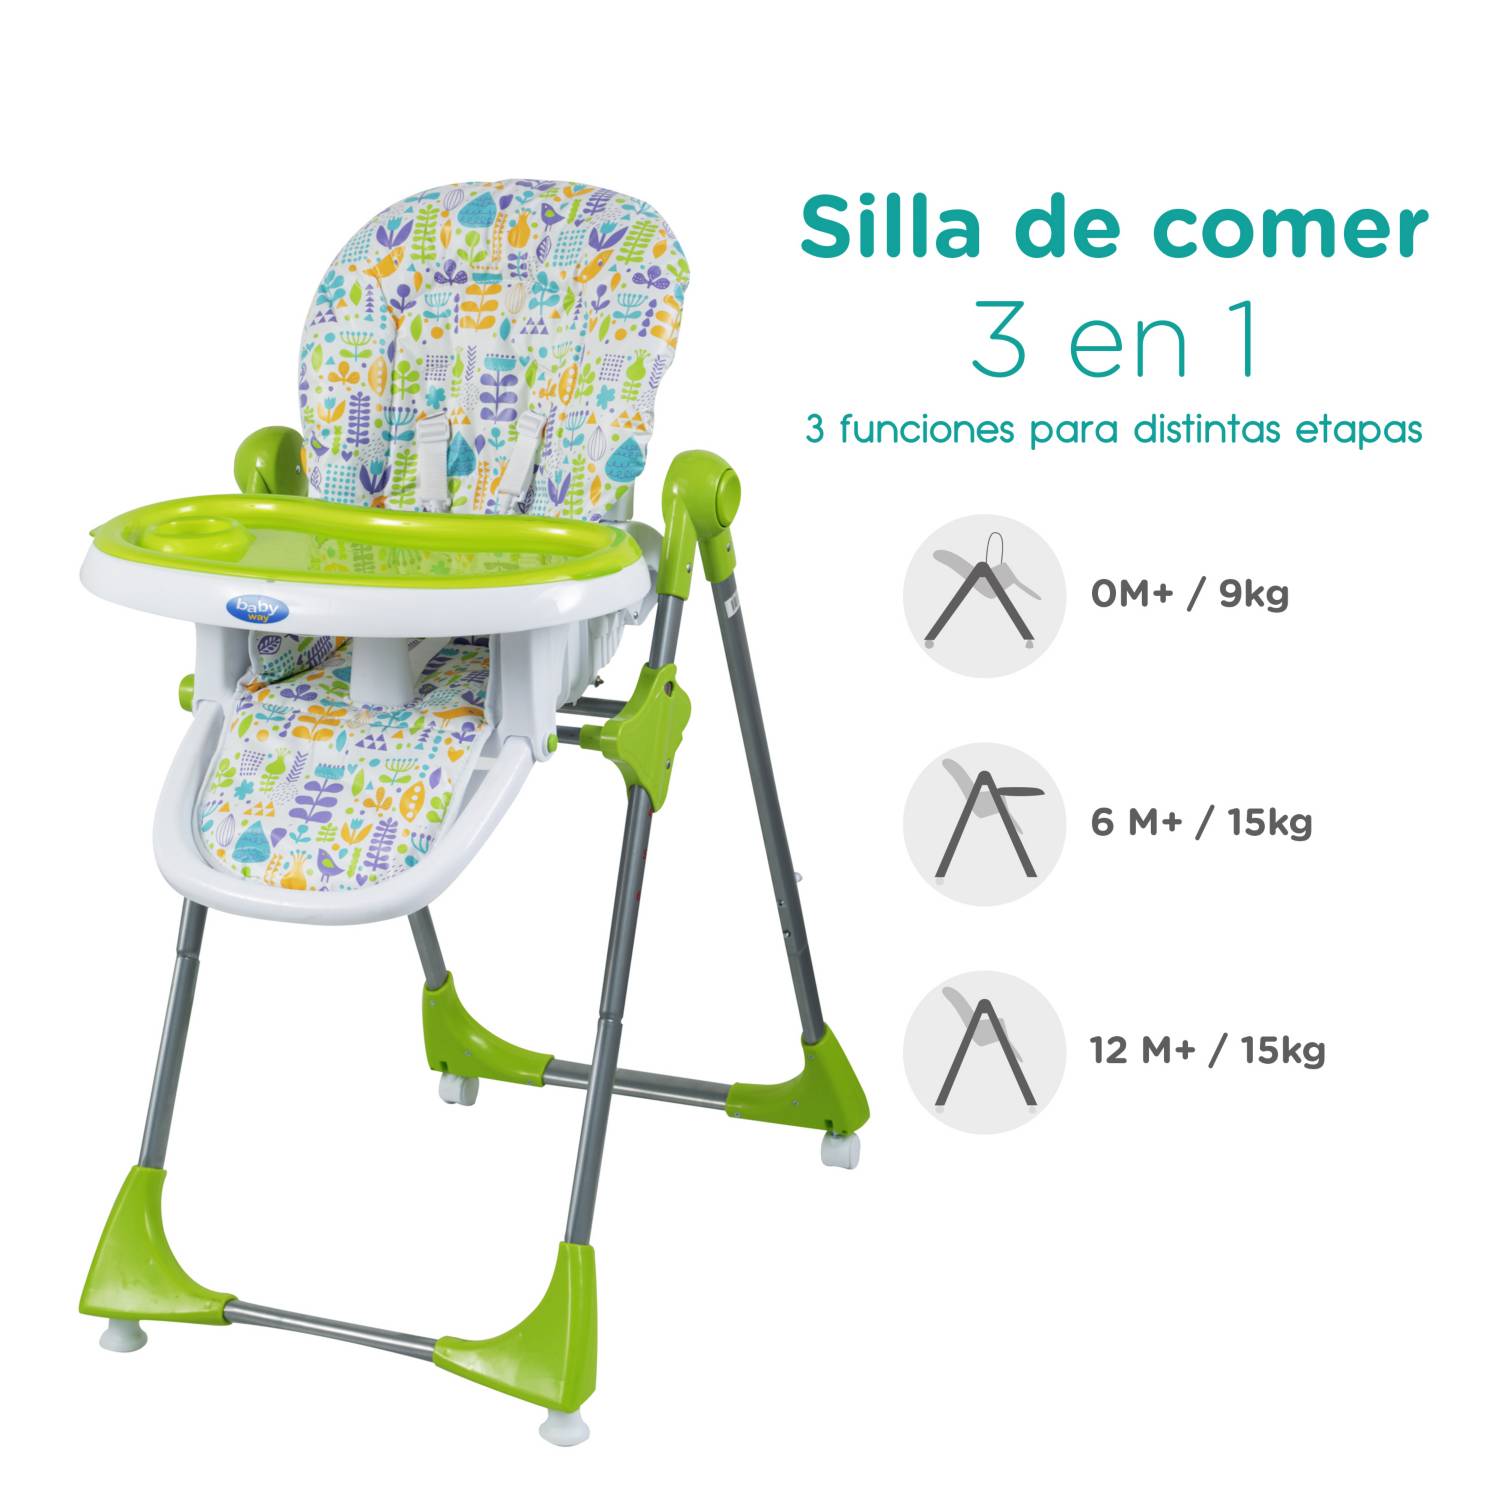 BABY WAY Silla de Comer Baby Way